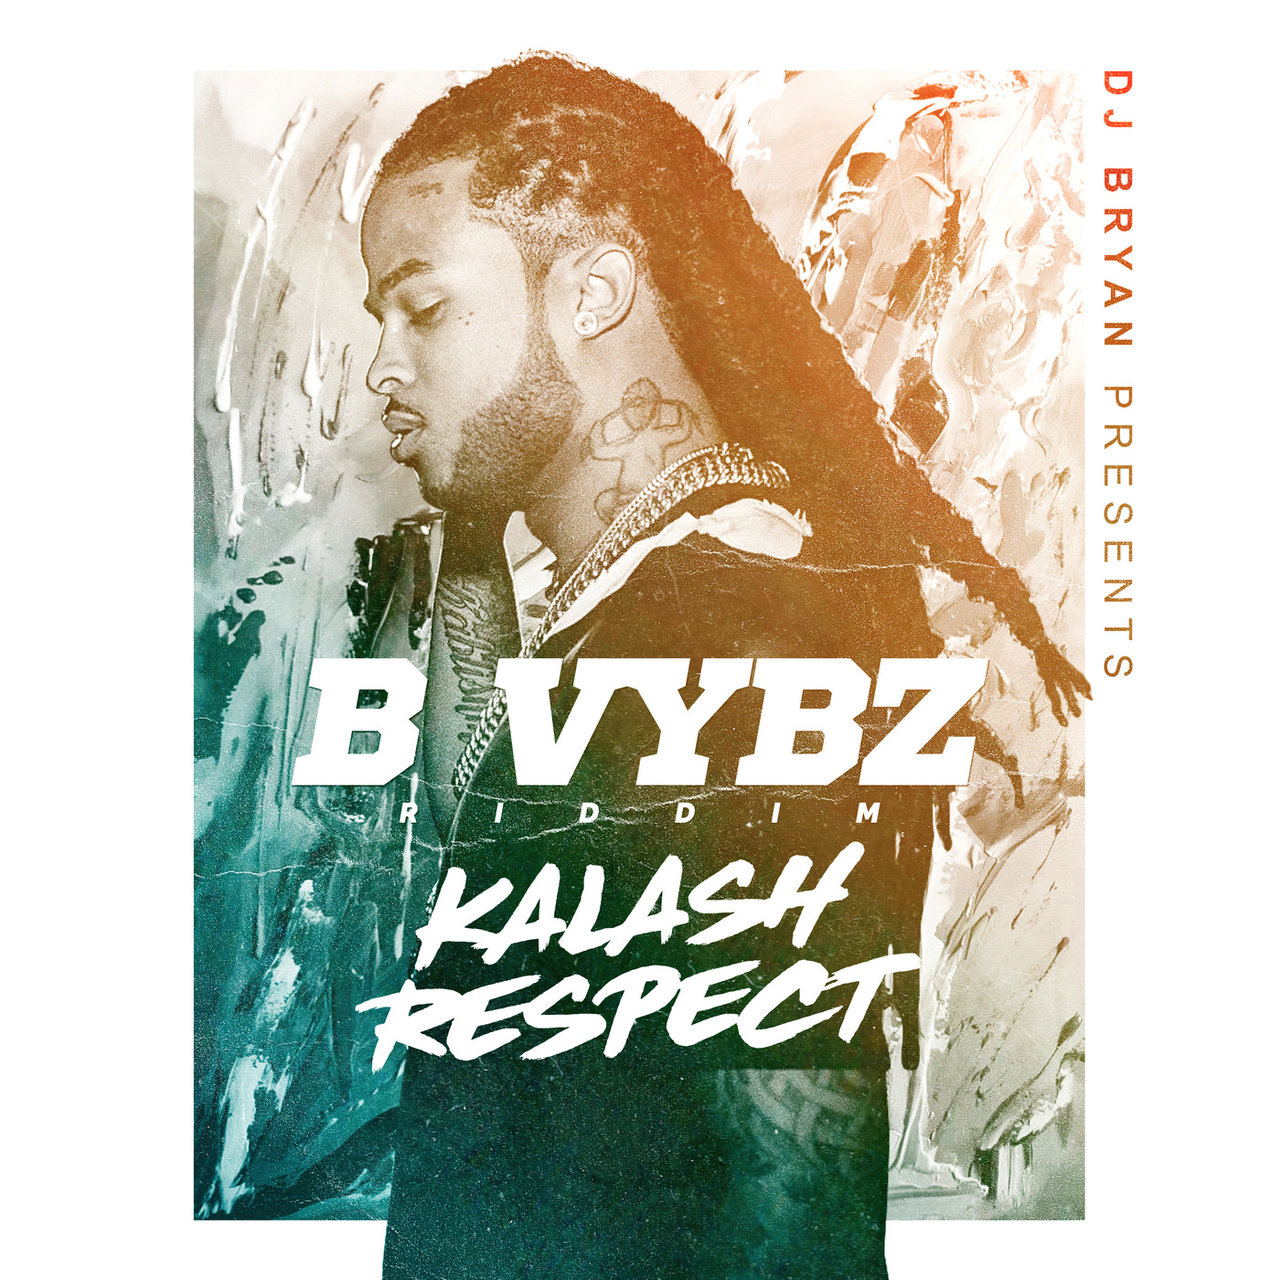 Kalash - Respect (B Vybz Riddim) (Cover)